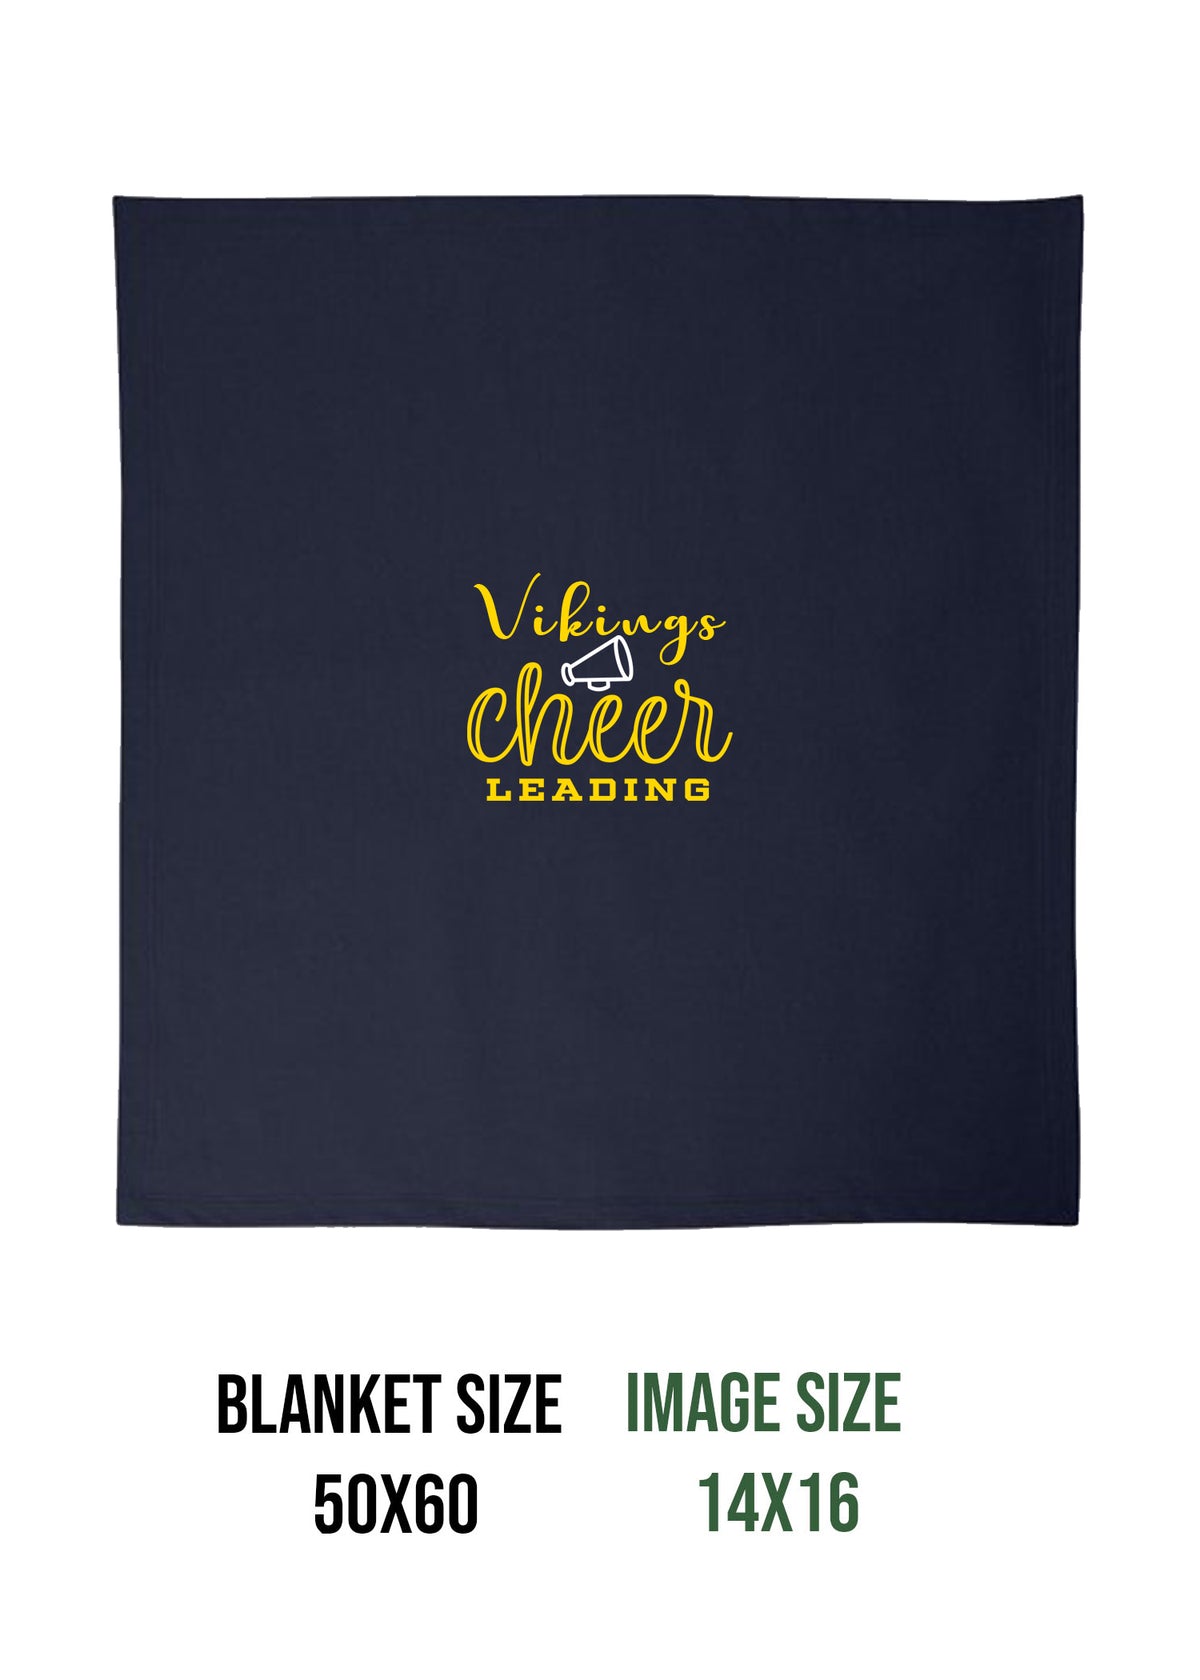 Vikings Cheer design 4 Blanket